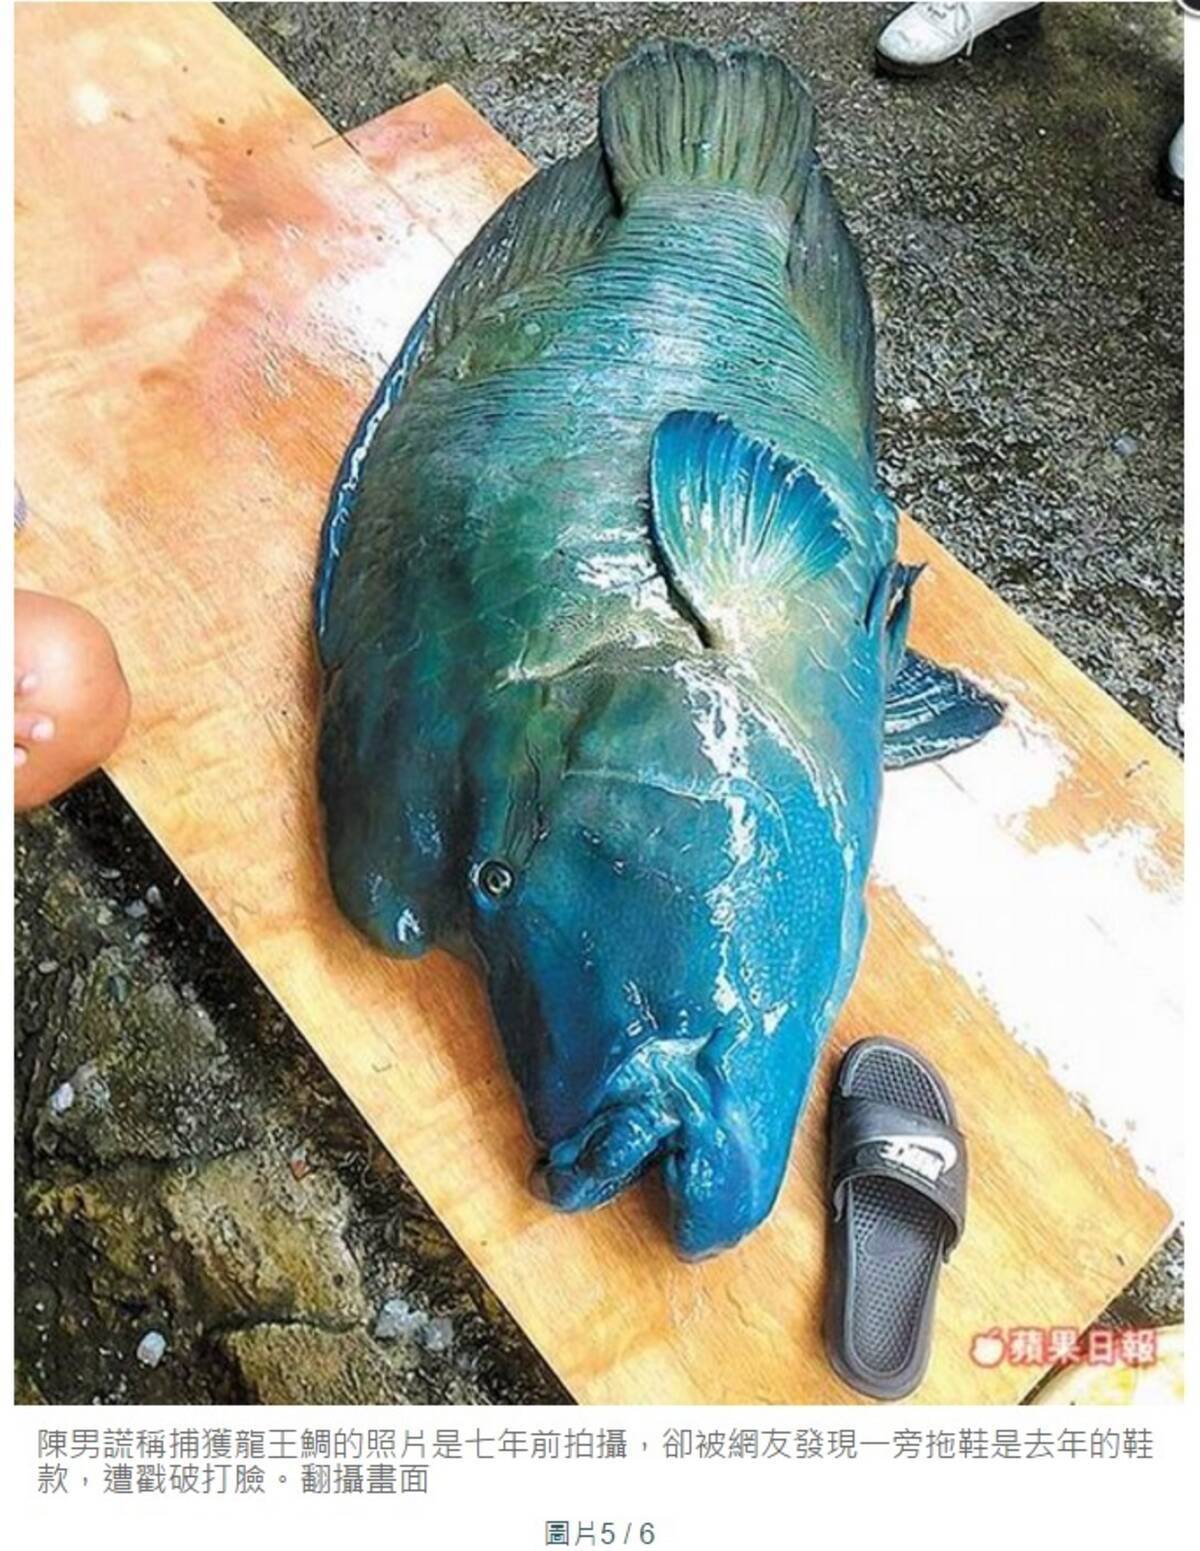 絶滅危惧種の魚が殺される ネット炎上 地元住民は落胆 台湾 16年5月24日 エキサイトニュース